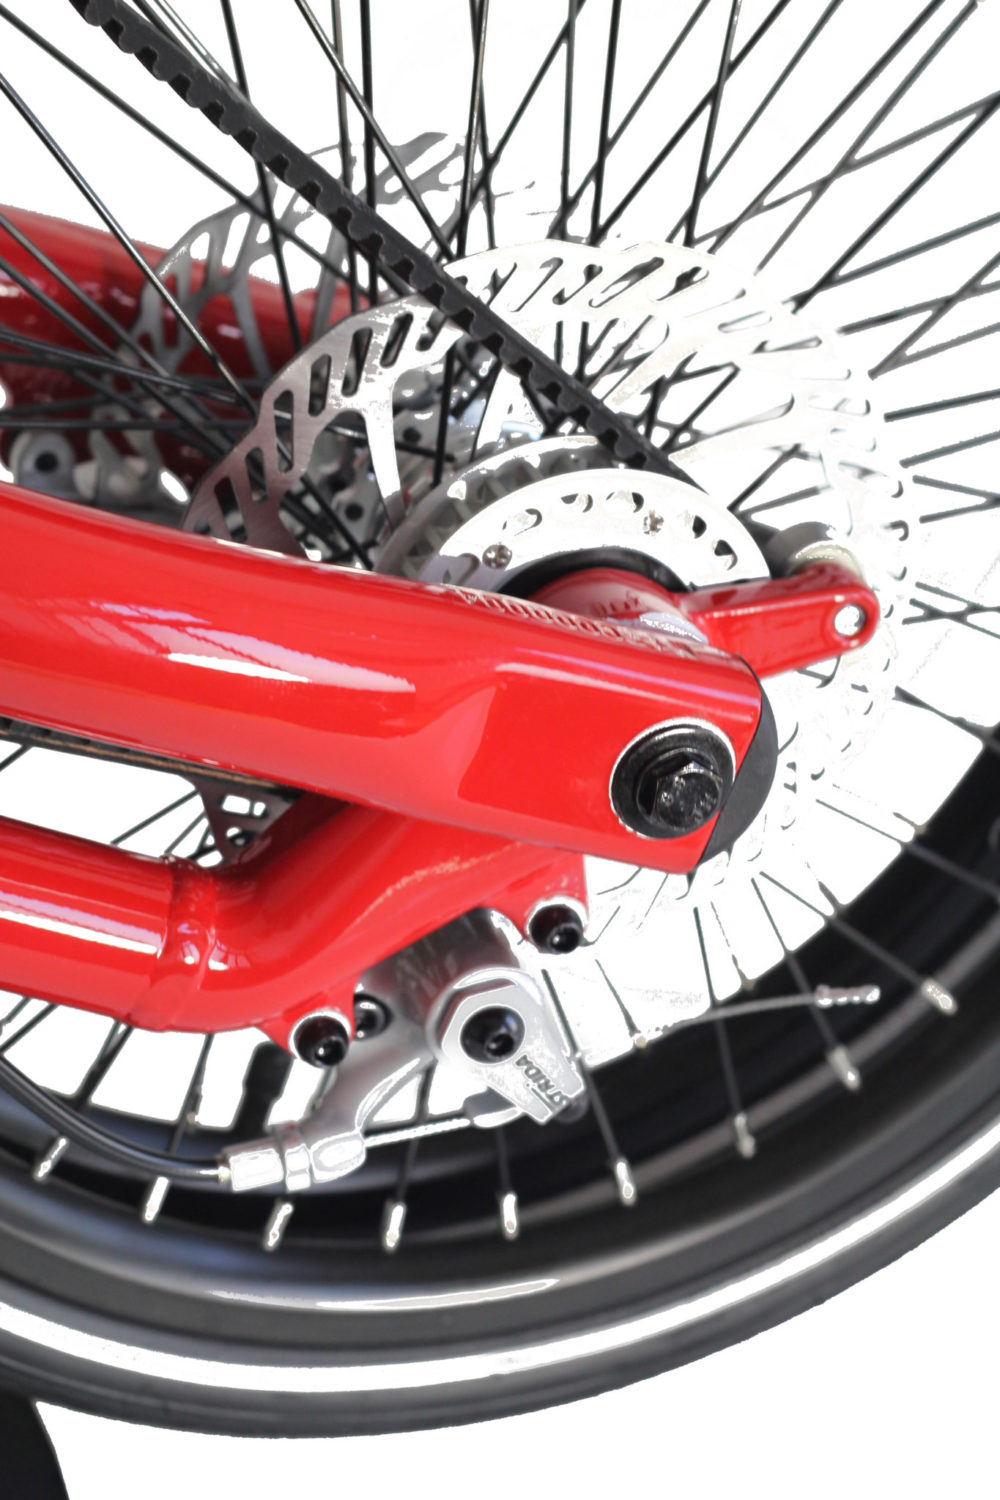 STRIDA SX Red Devil - 18 pouces - à vendre - acheter - Acheter des vélos pliables - Acheter des vélos pliants - Acheter un vélo pliable - Acheter un vélo pliant - forme triangulaire - fr - Léger - Magasin - Magasin de vélo pliant - nouveau - strida - sx - triangulaire - vélo - vélo compact - Vélo design - vélo pliable - vélo pliant - Vélo pliant design - vélo pliant design strida - Vélo pliant triangulaire - vélo pliant unique - Vélos pliable - Vélos pliants - Vitesse unique